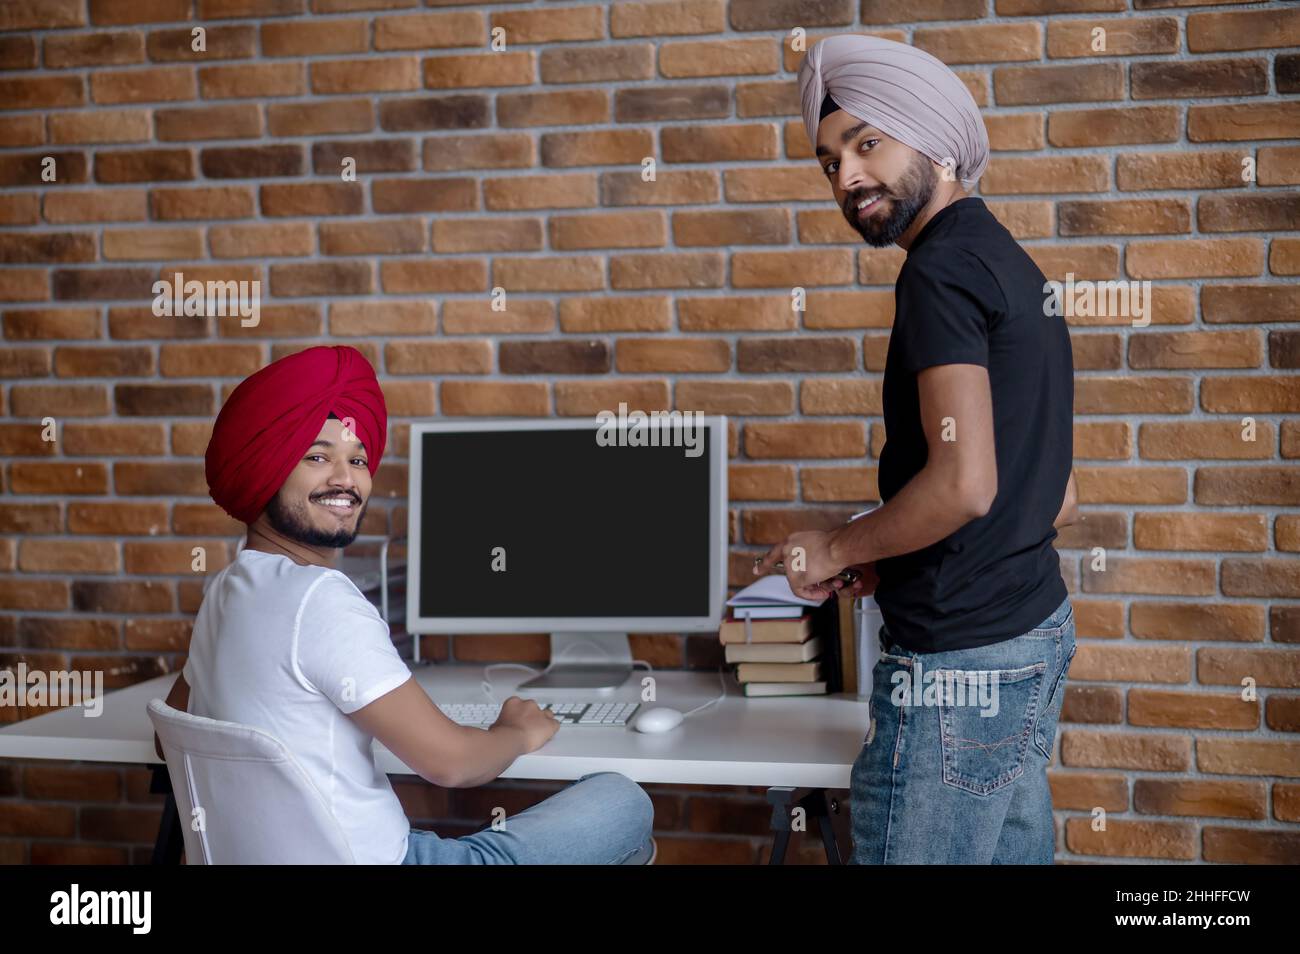 Zwei indische Männer arbeiten zusammen und sehen zufrieden aus Stockfoto